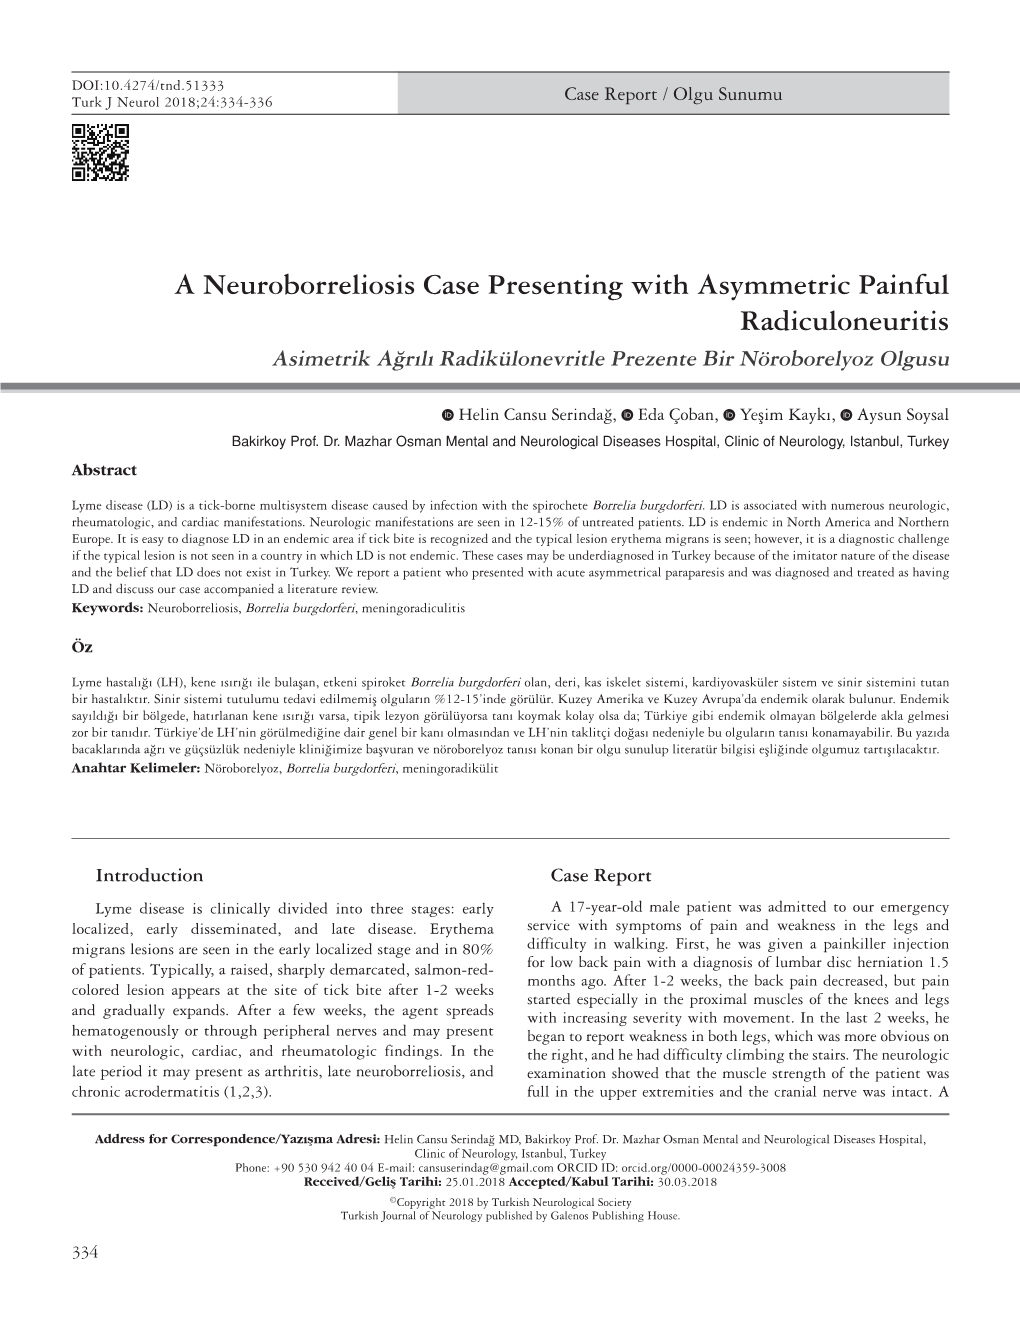 A Neuroborreliosis Case Presenting with Asymmetric Painful Radiculoneuritis Asimetrik Ağrılı Radikülonevritle Prezente Bir Nöroborelyoz Olgusu